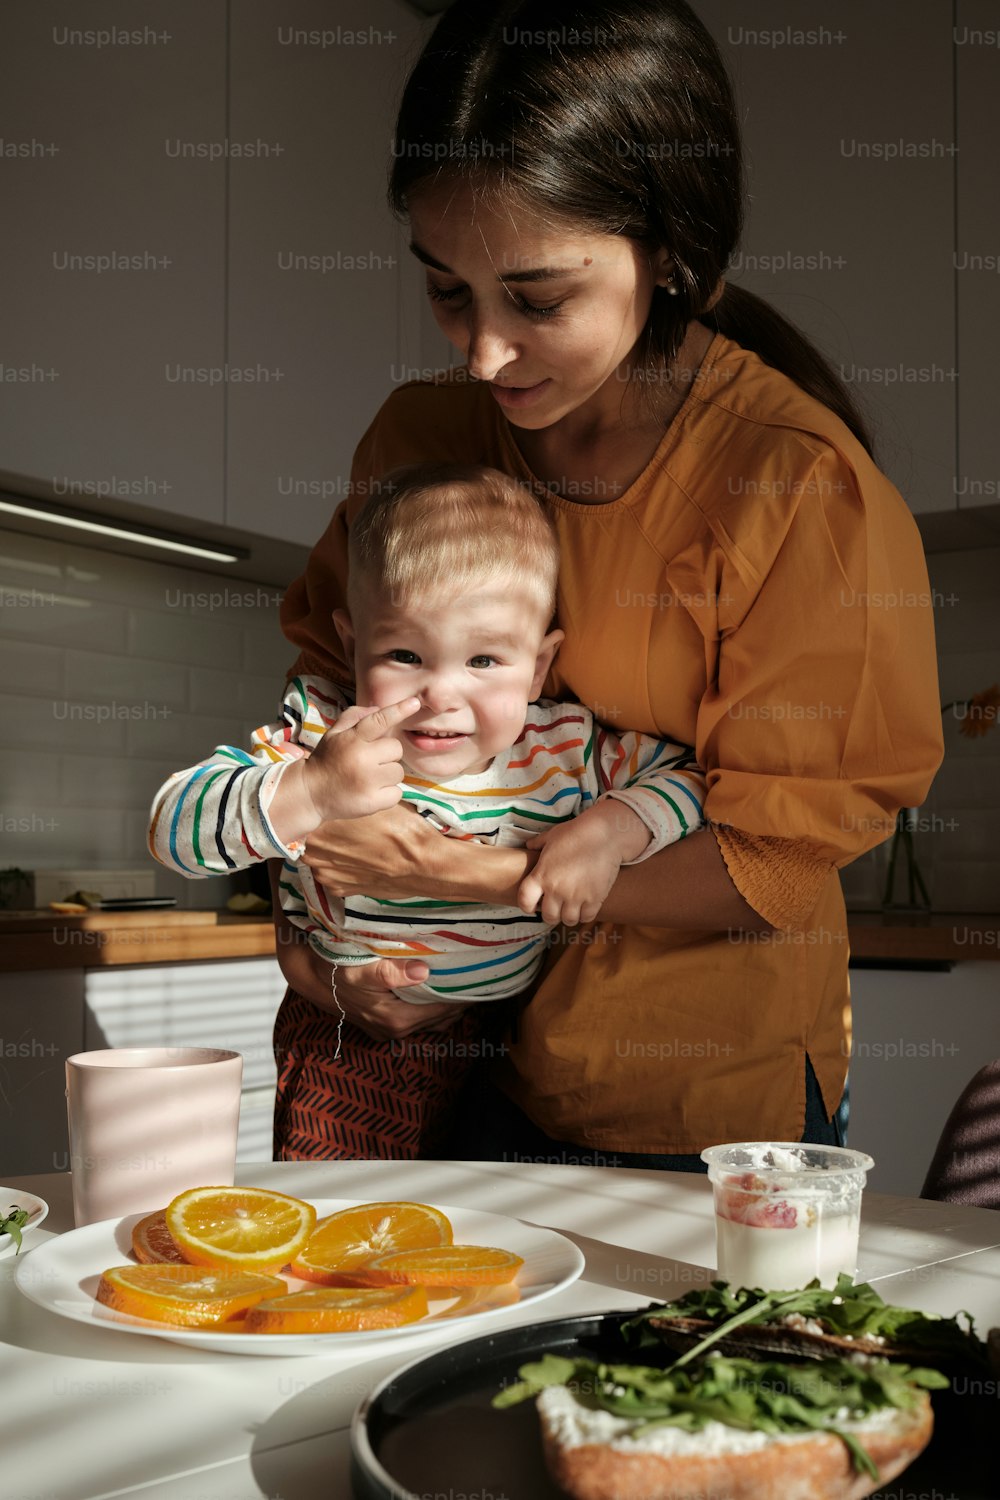 食べ物の皿の前で赤ちゃんを抱く女性